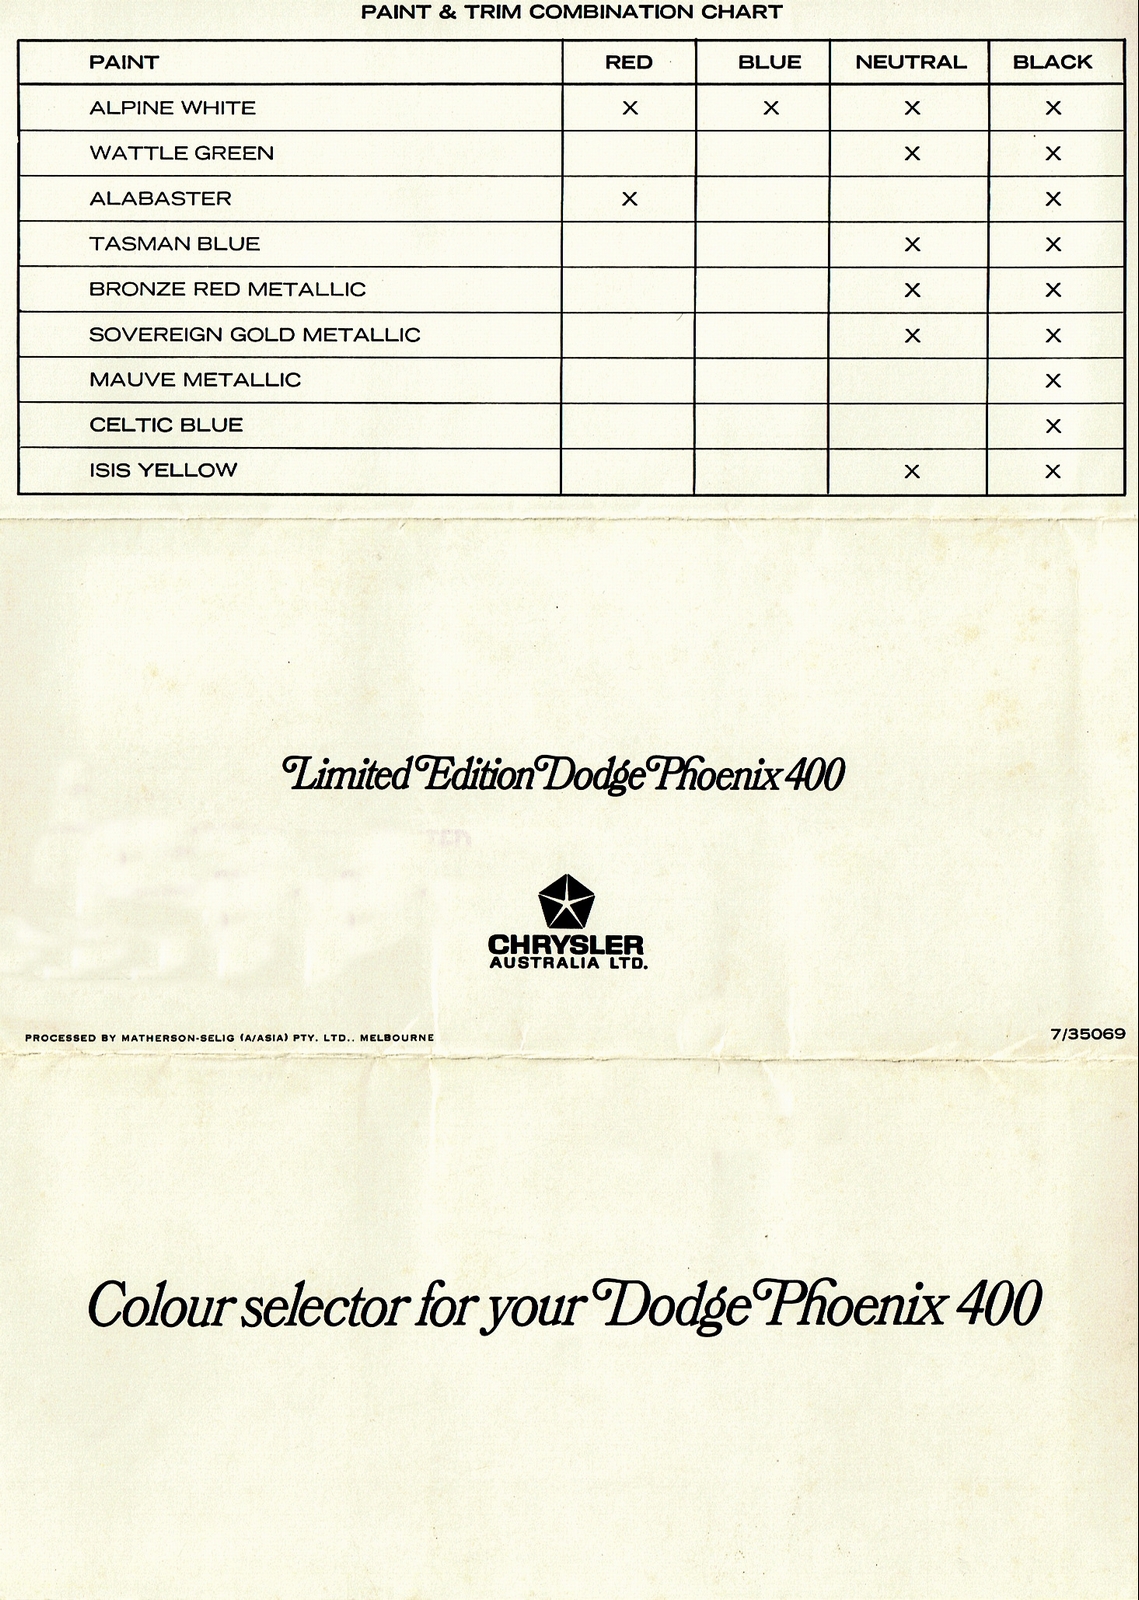 n_1969 Dodge Phoenix Paint Colours-01-02-03.jpg